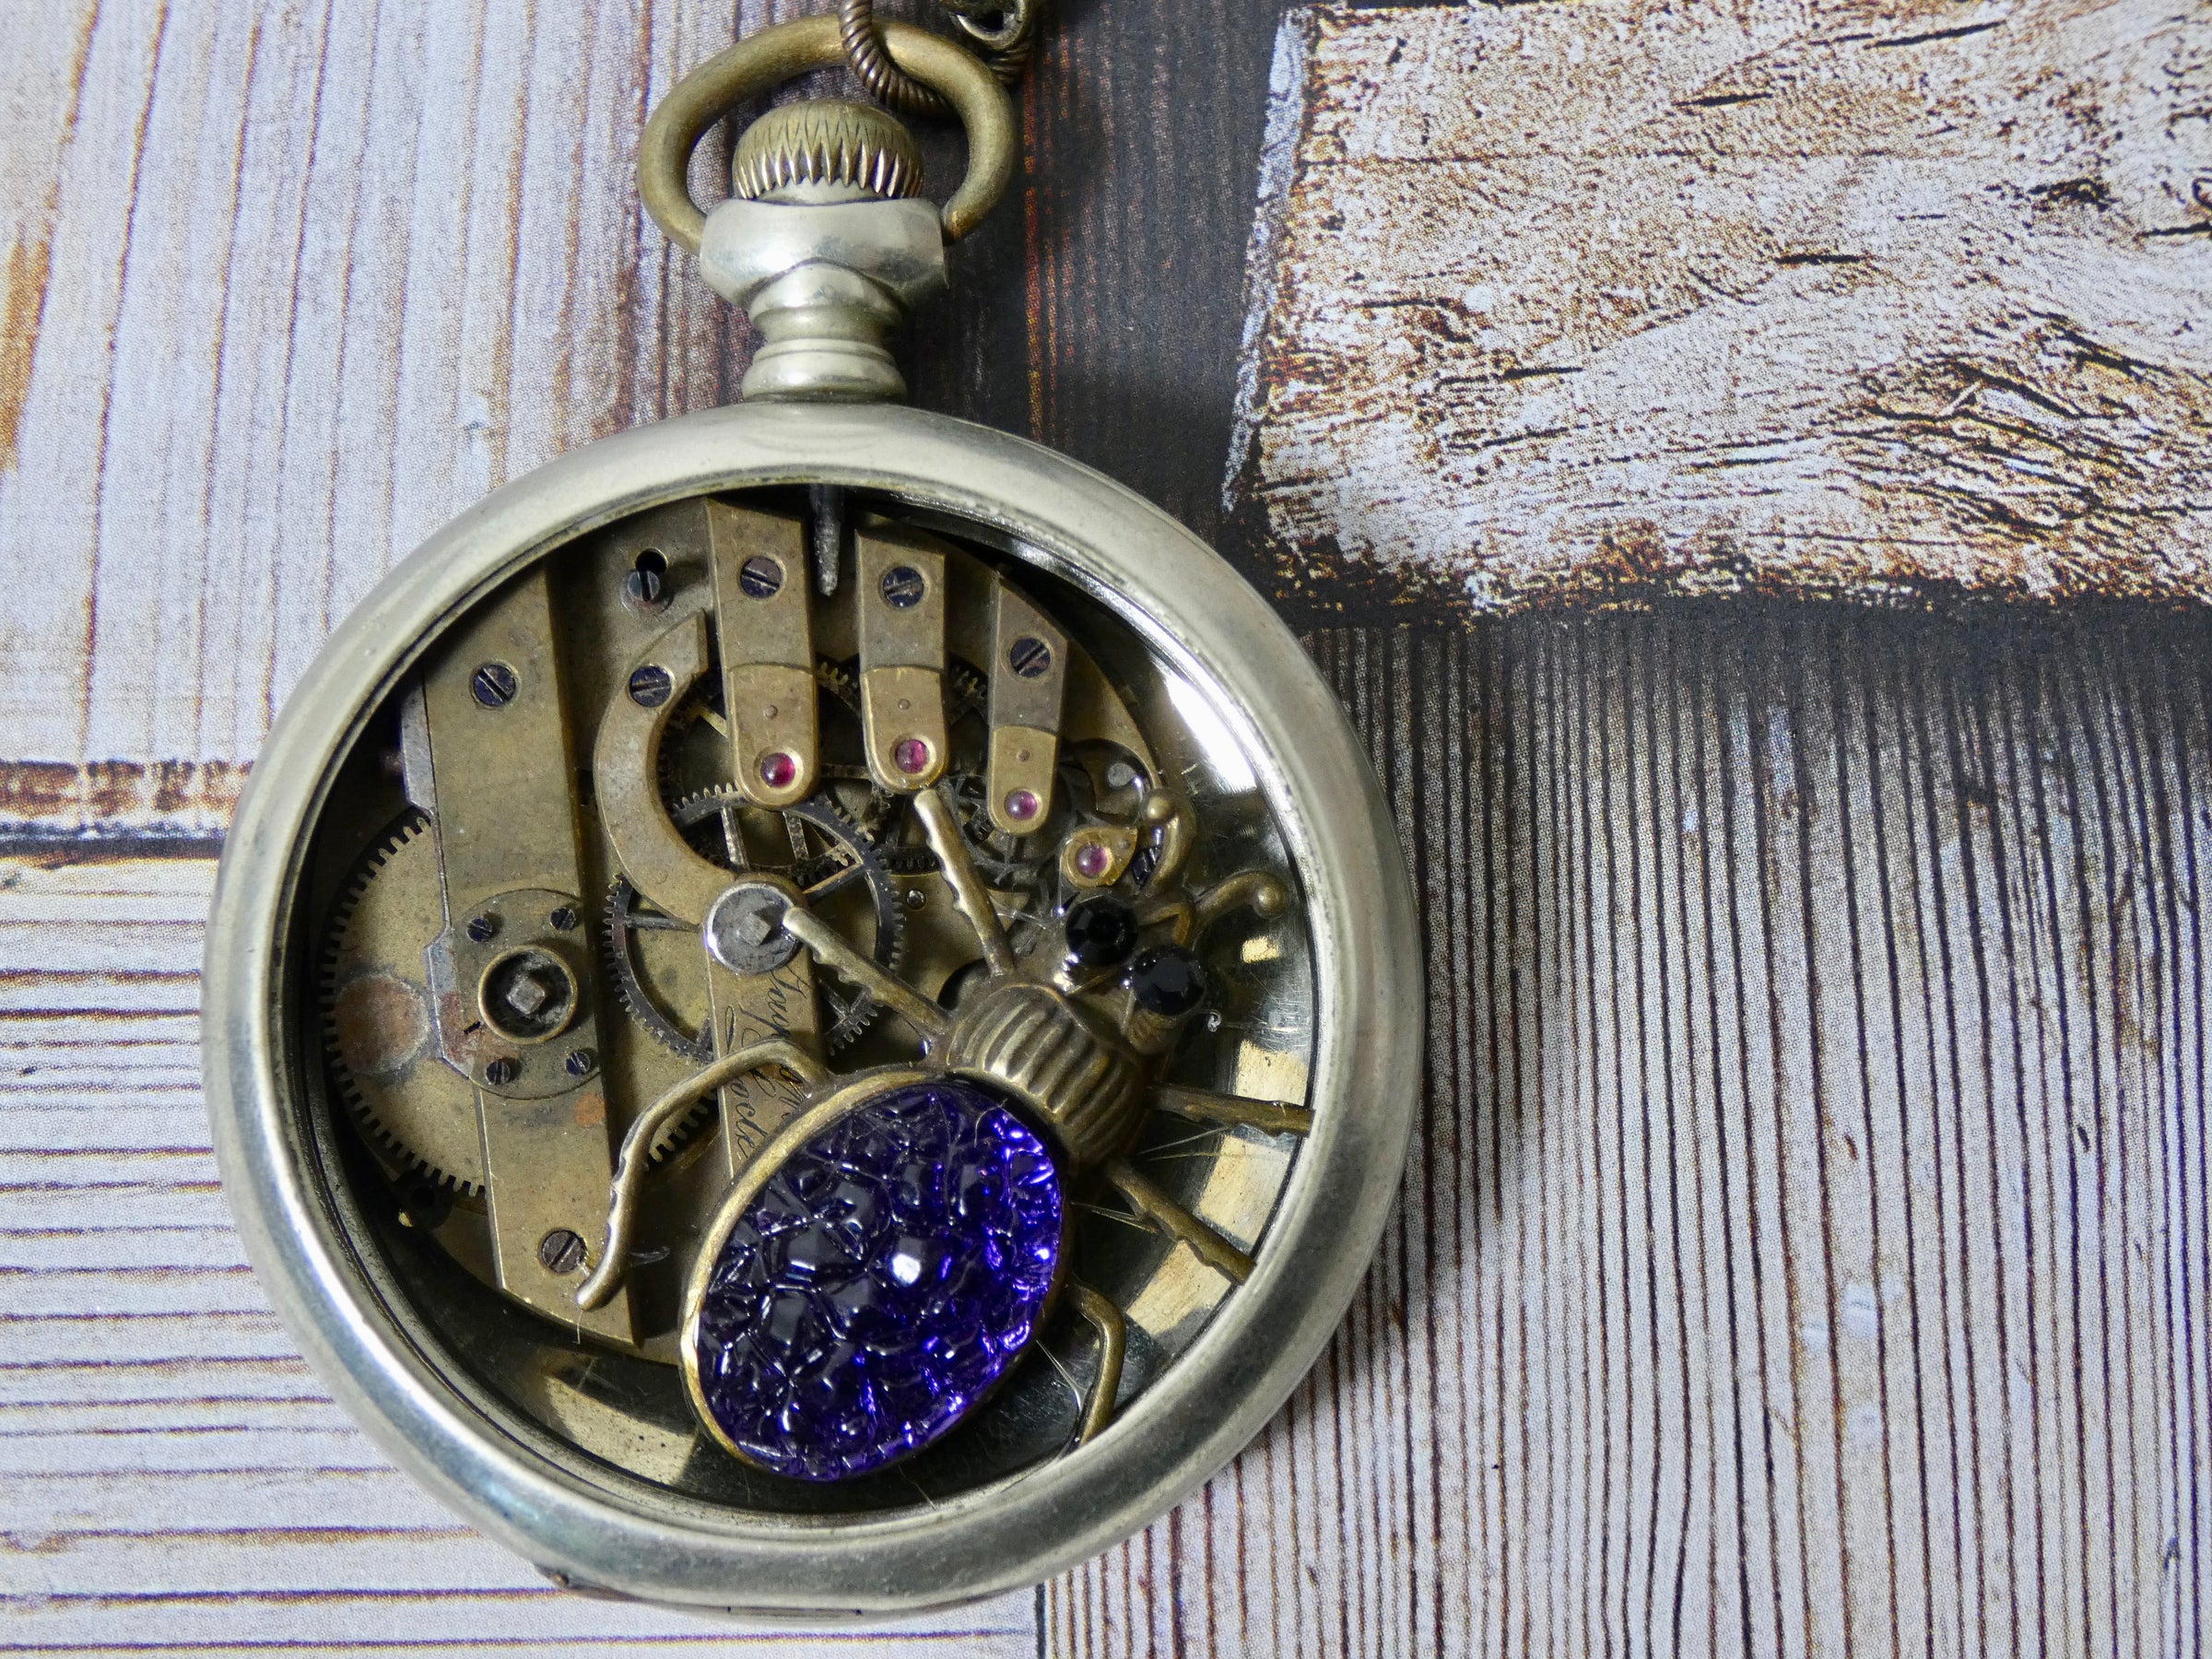 Vintage Pocket Watch Gear Necklace, Purple Spider Charm